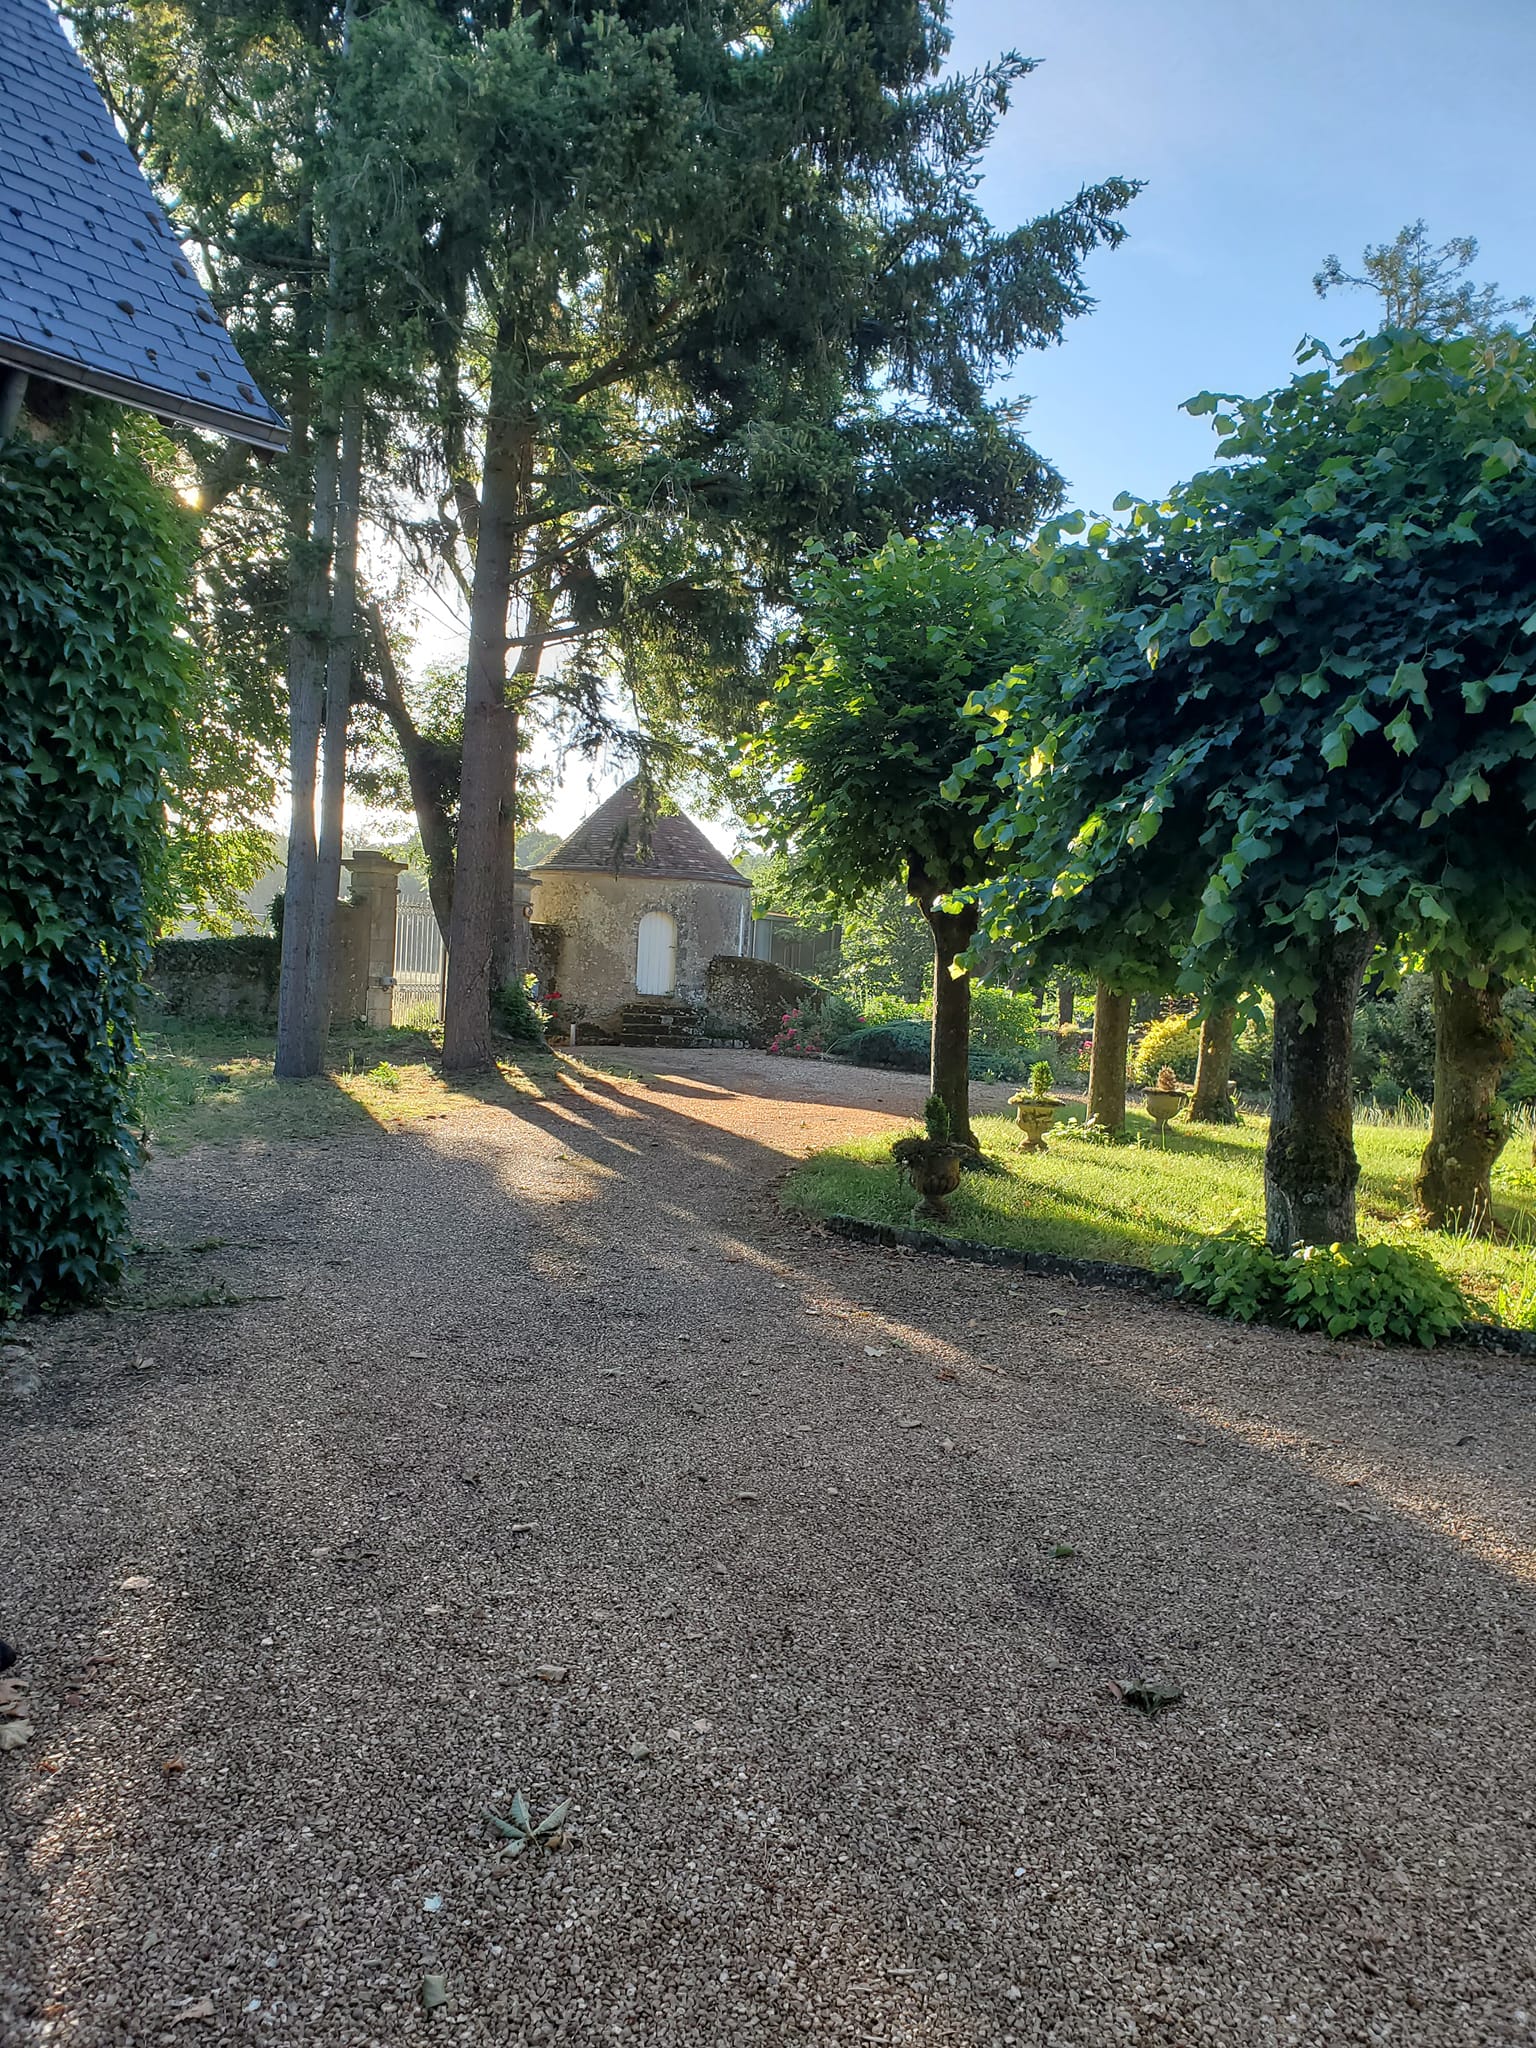 Découvrez un hôtel historique et ses jardins en Eure et Loir - Passez un séjour inoubliable grâce à nos 19 Chambres Luxe & Confort. Le Chateau est situé à Bonneval entre Chateaudun et Chartres en Eure et Loir.